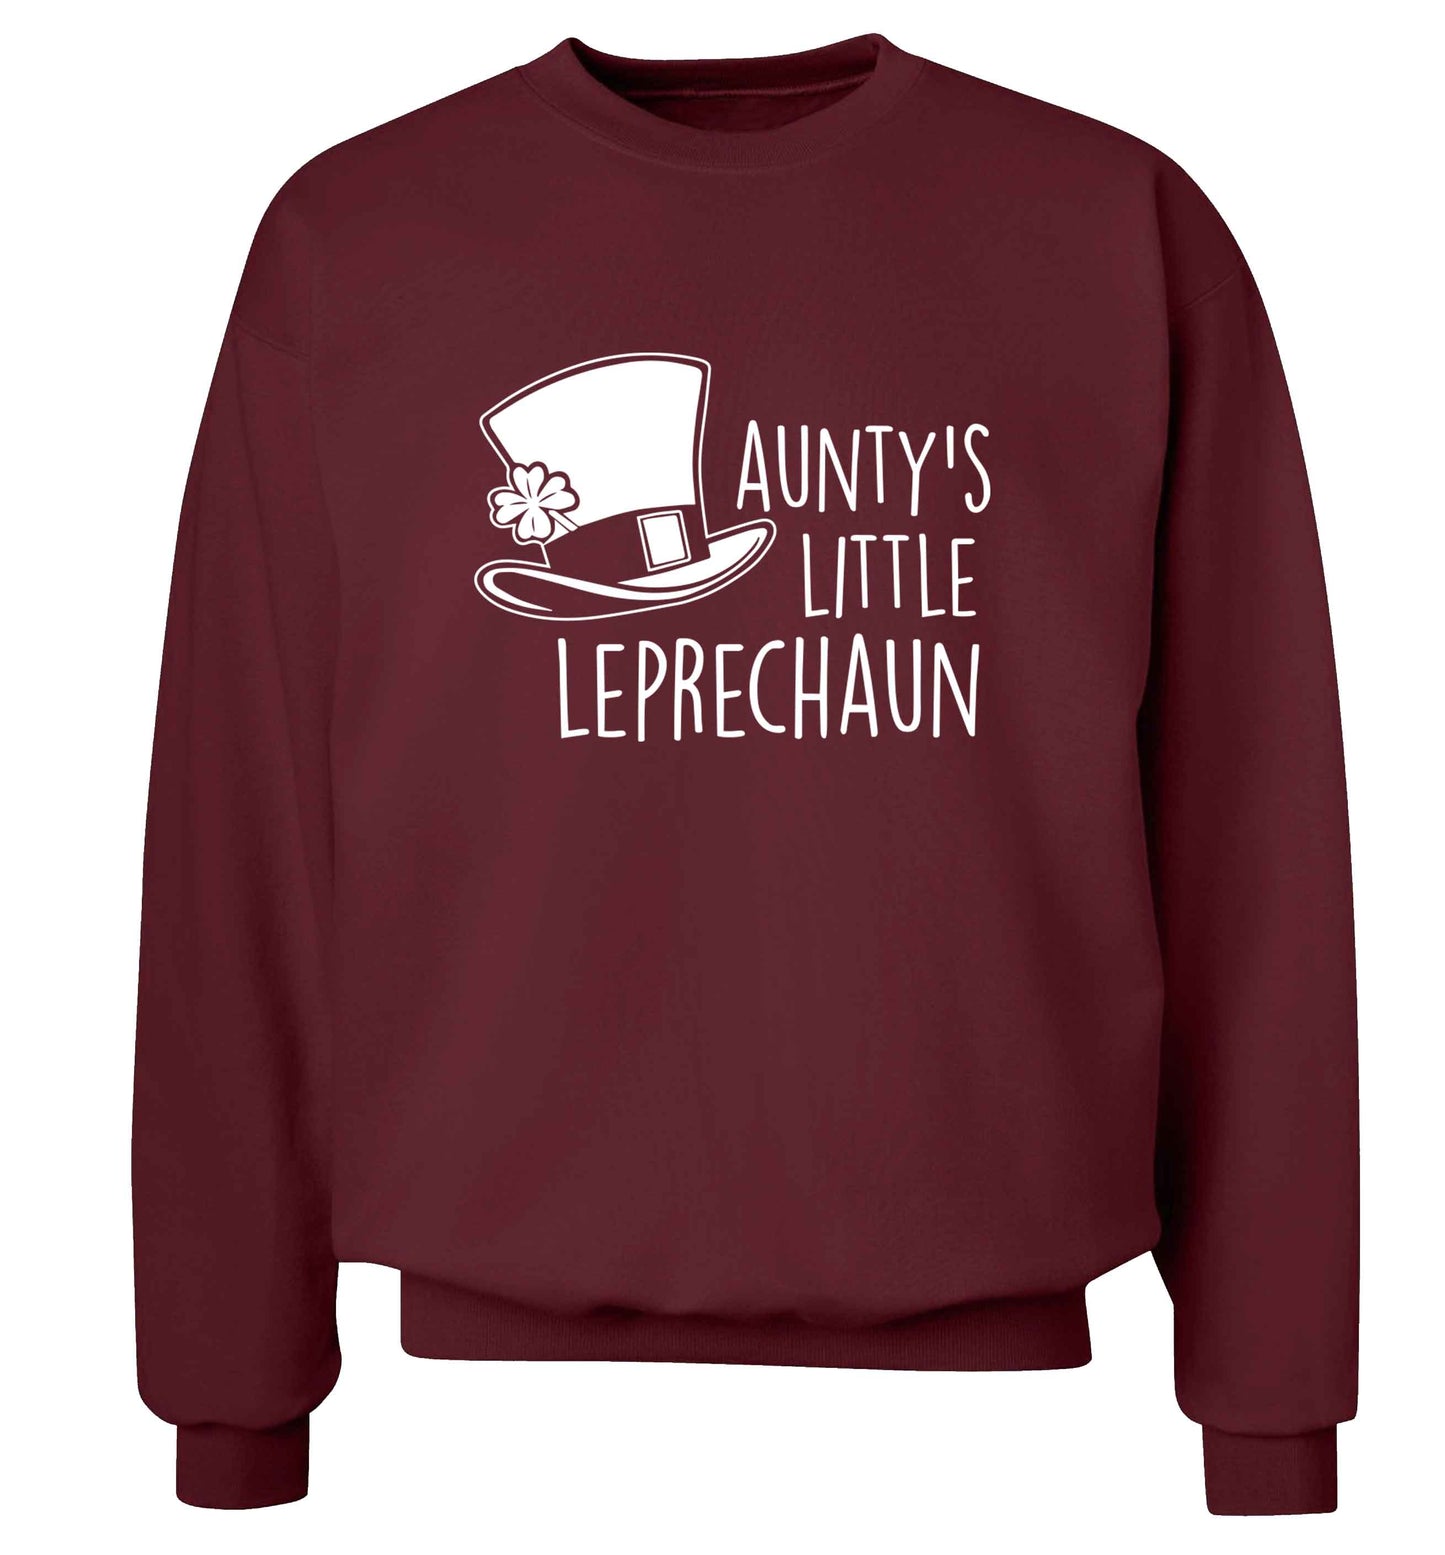 Aunty's little leprechaun adult's unisex maroon sweater 2XL